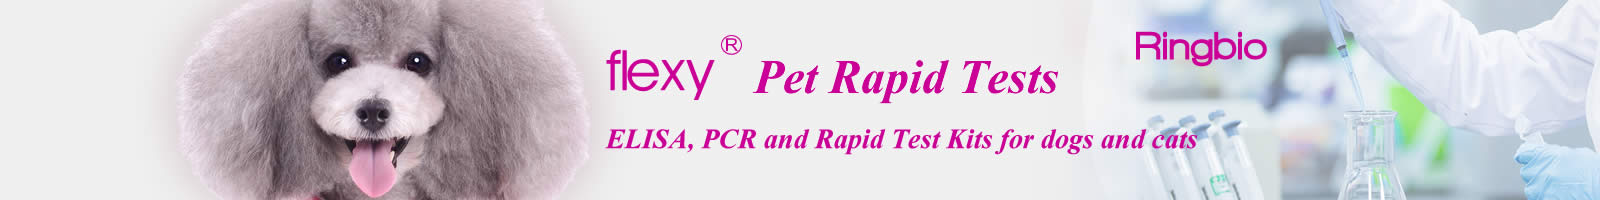 Ringbio Pet Rapid Test Kits, ELISA, PCR